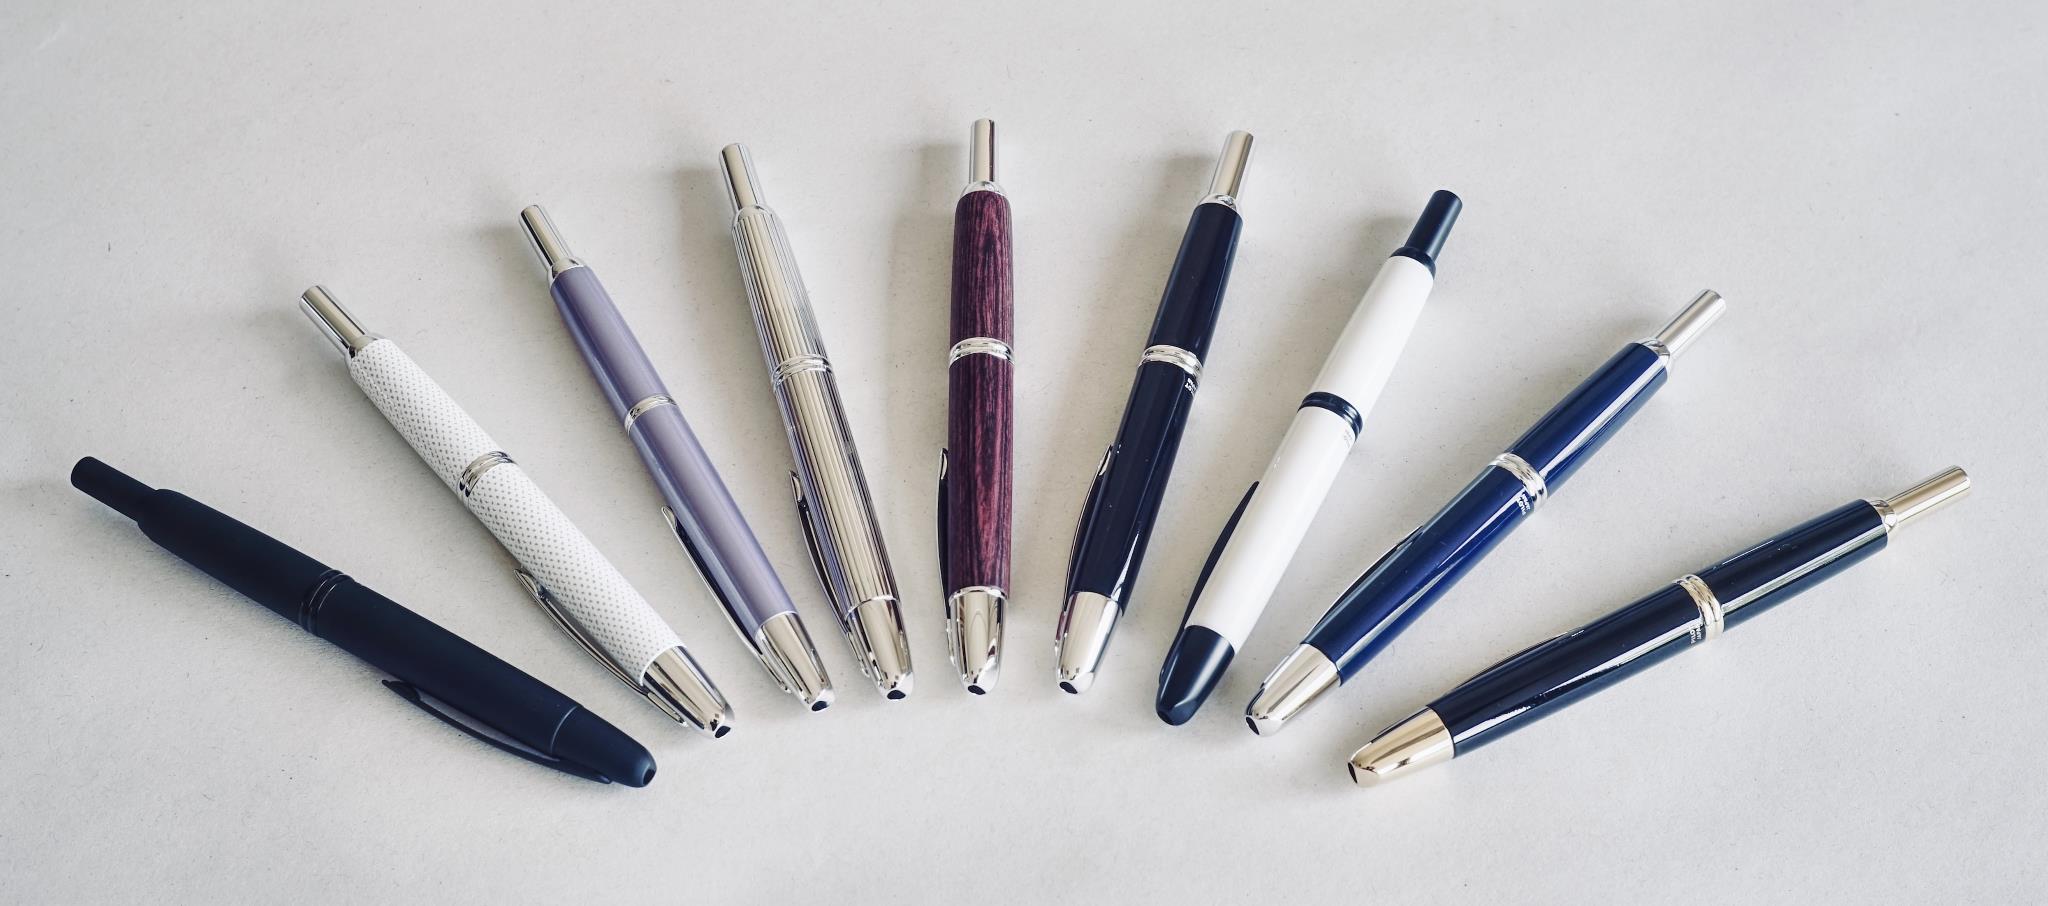 Несколько вариантов Pilot Capless fountain pen